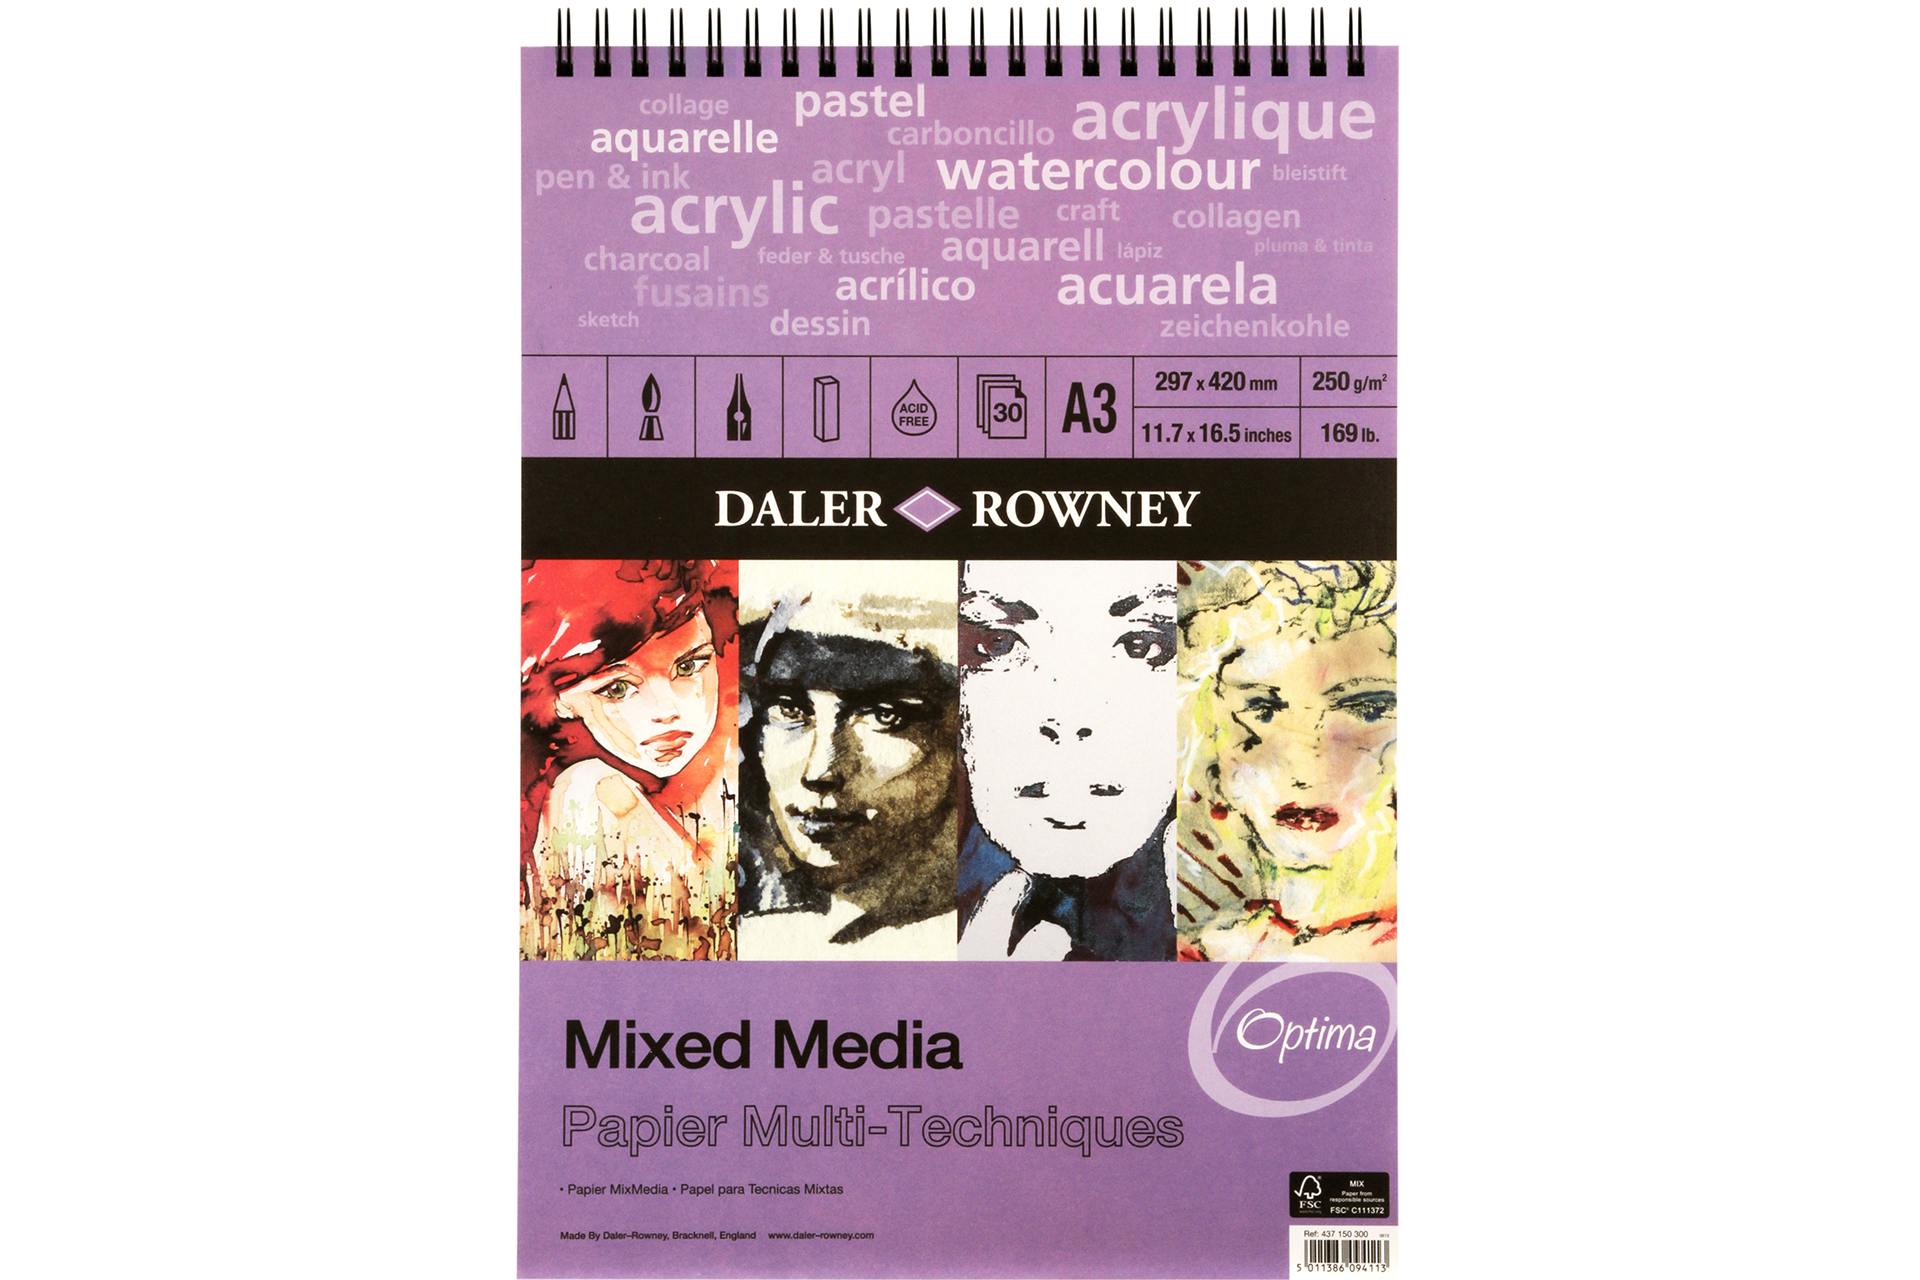 Daler Rowney Pocket Sketchbook 24 Pages Soft Cover Acid Free 3.5 x 5.5  Sealed